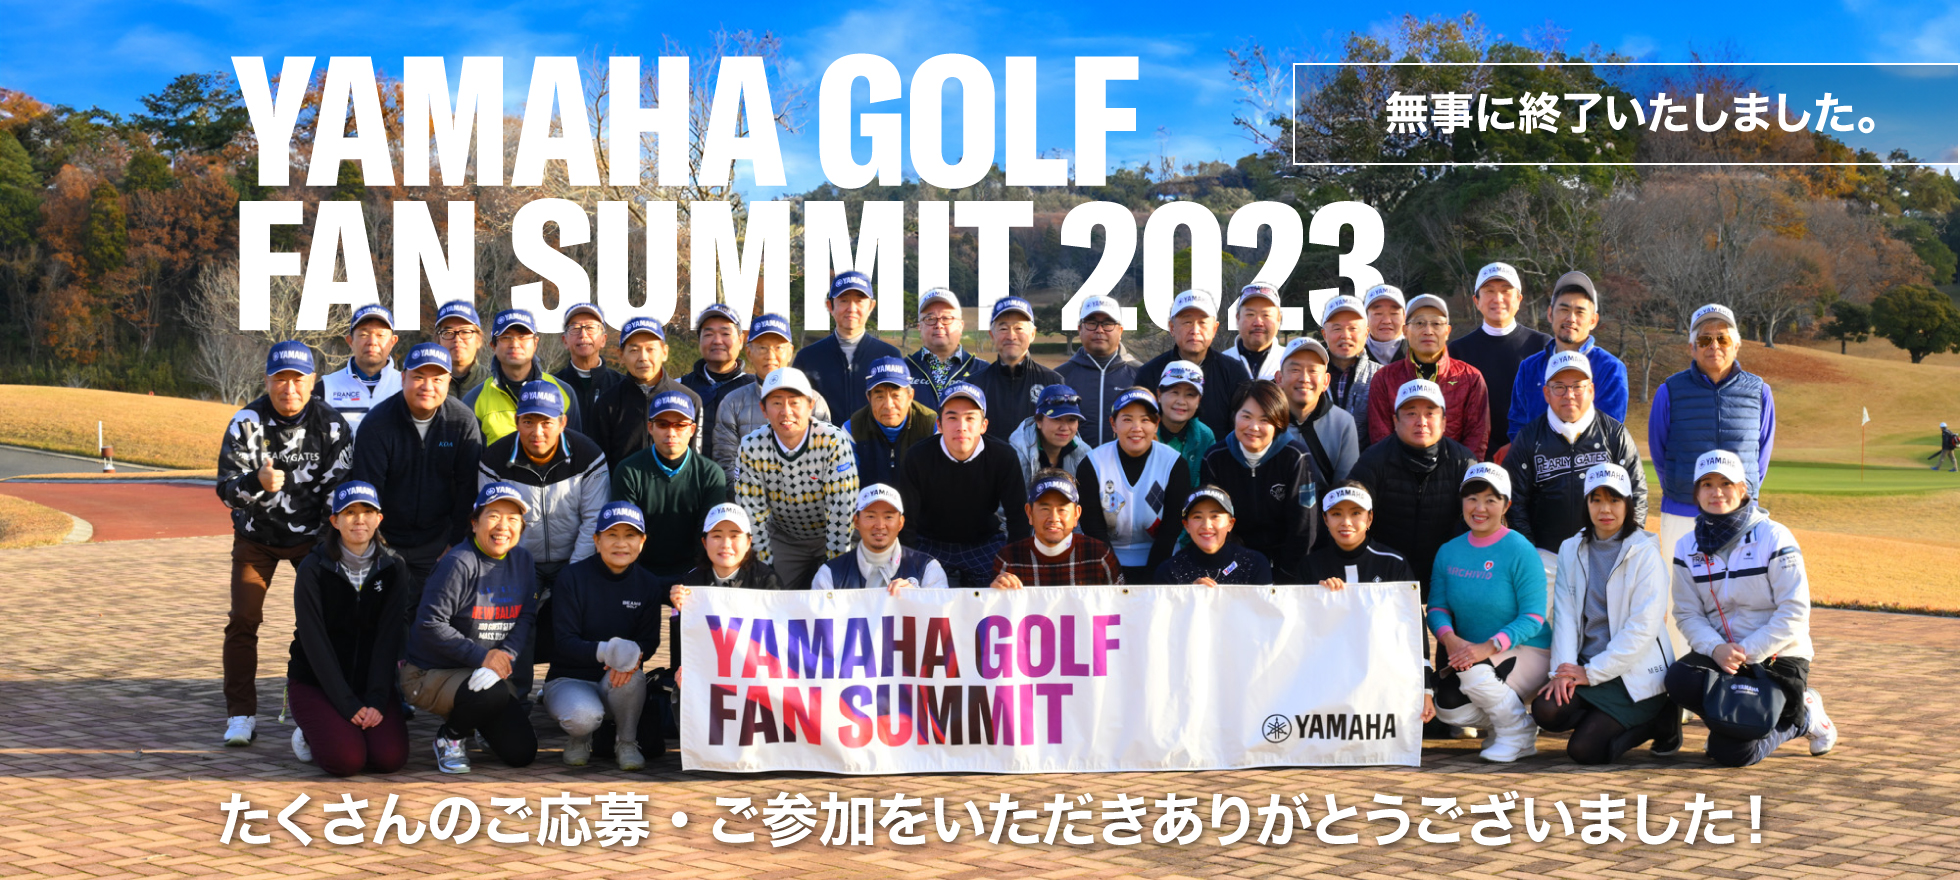 Yamaha GOLF Fan Summit 2023